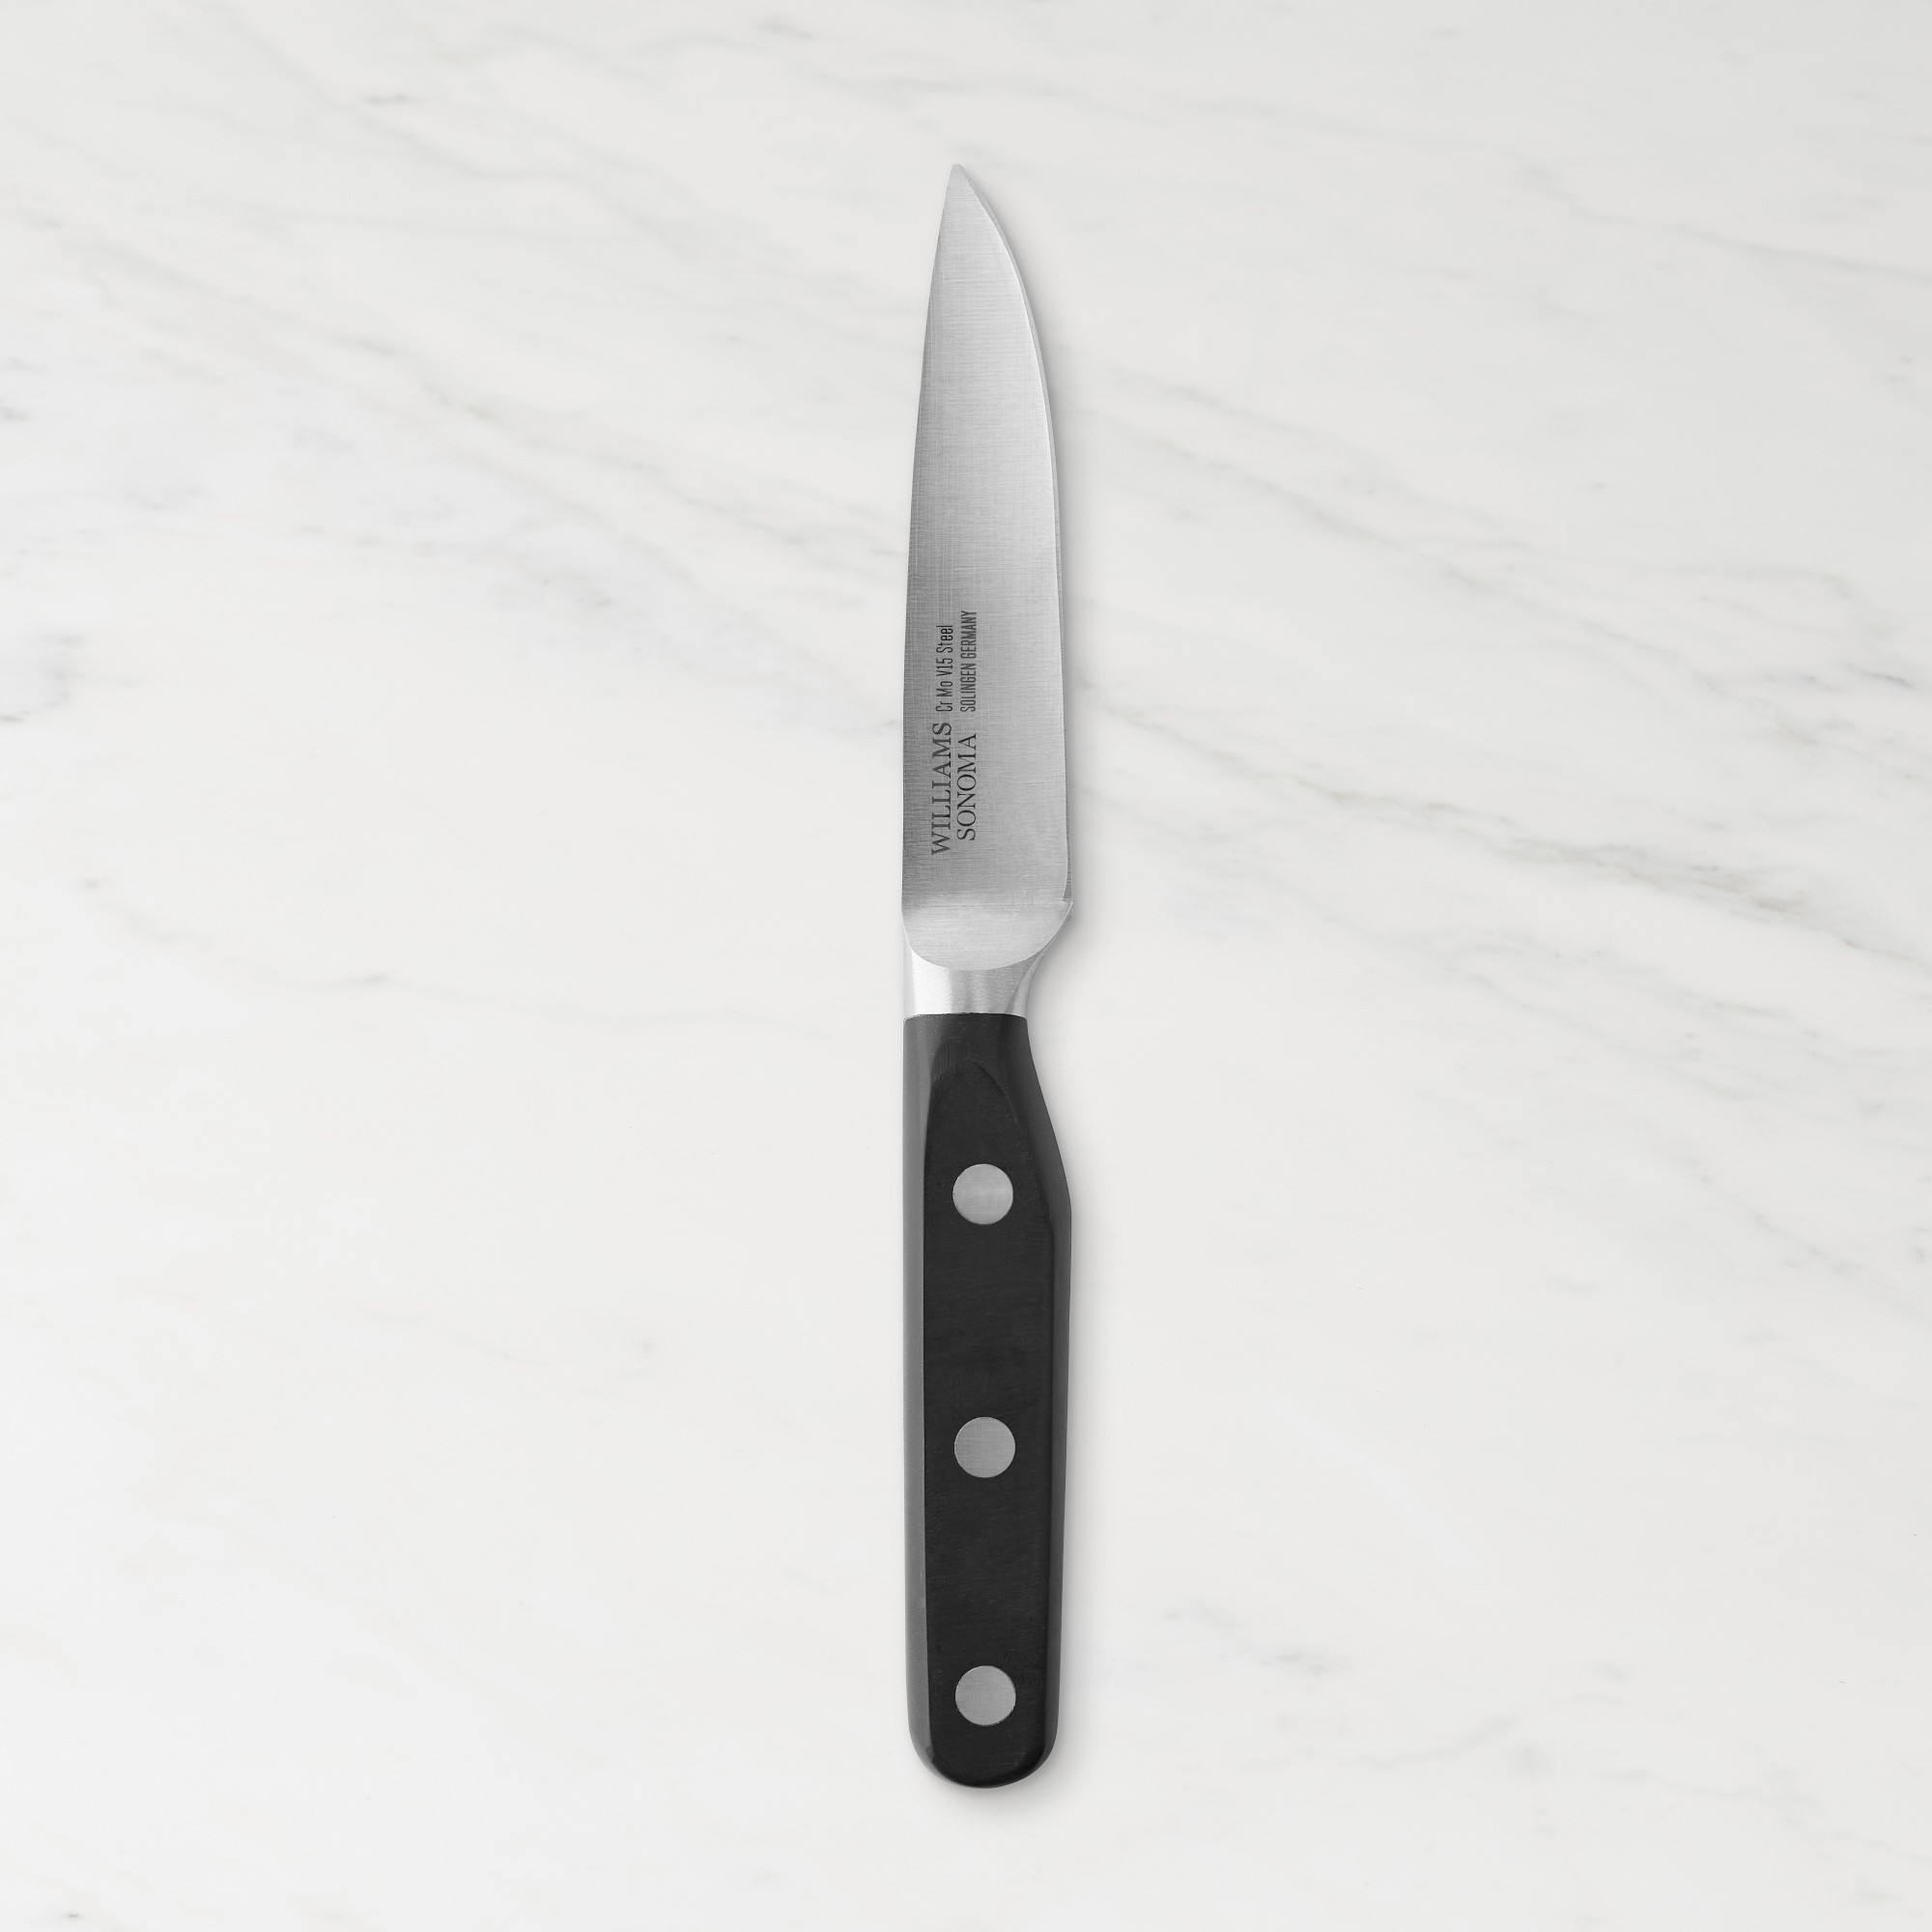 Williams Sonoma Elite Paring Knife, 3 1/2"